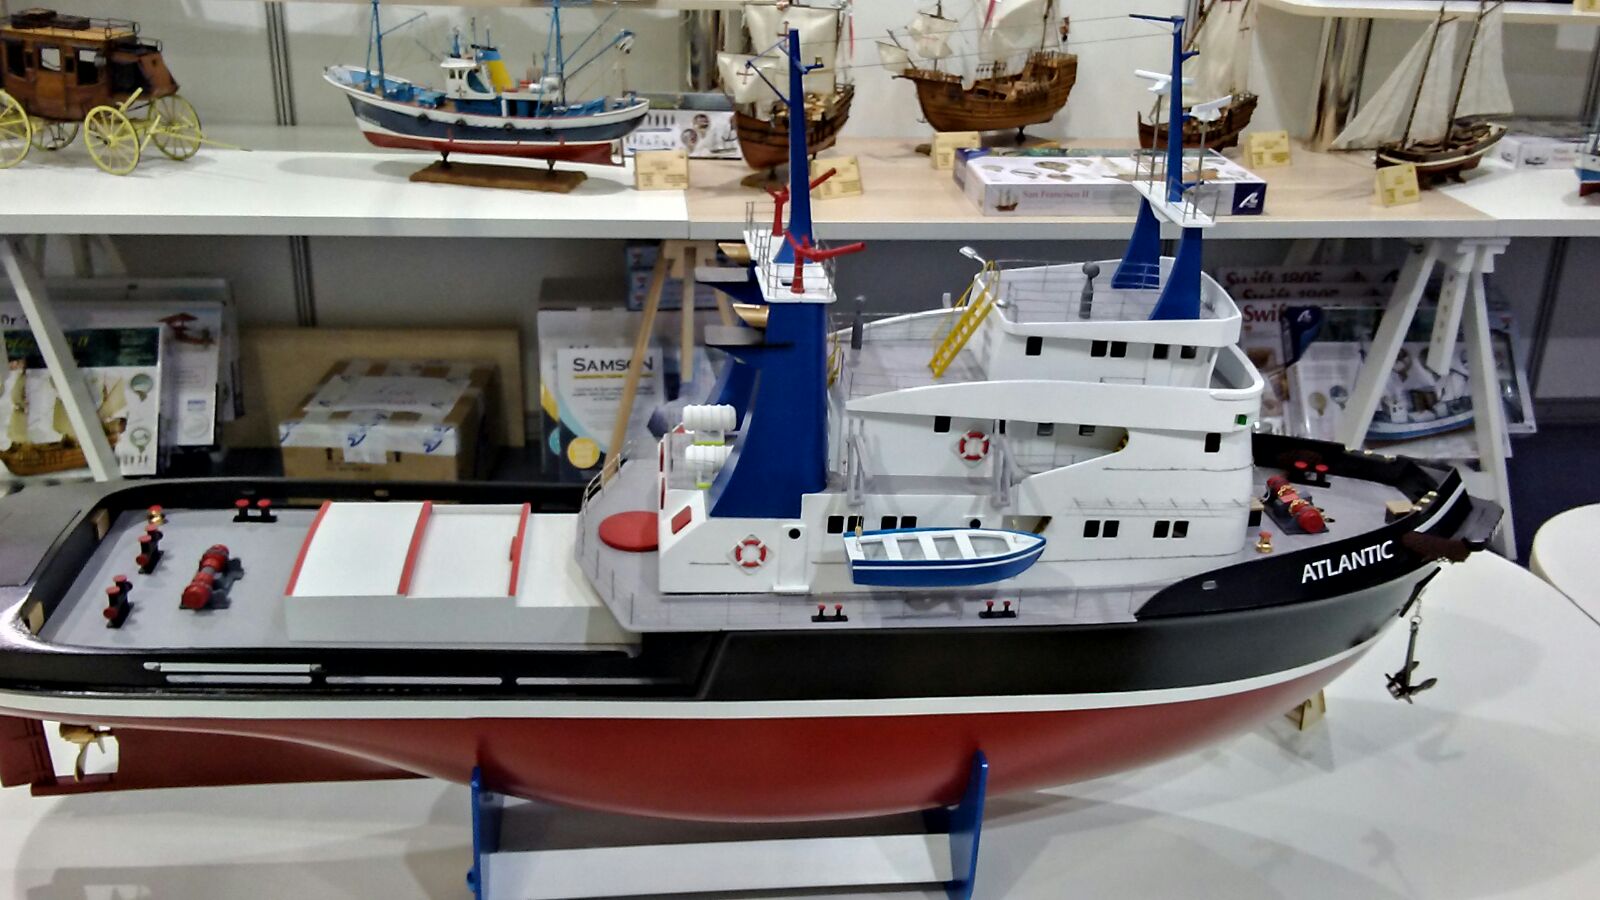 Modelismo Naval. Maqueta en madera y ABS del Remolcador Atlantic 1/50 (20210), preparada para R/C.